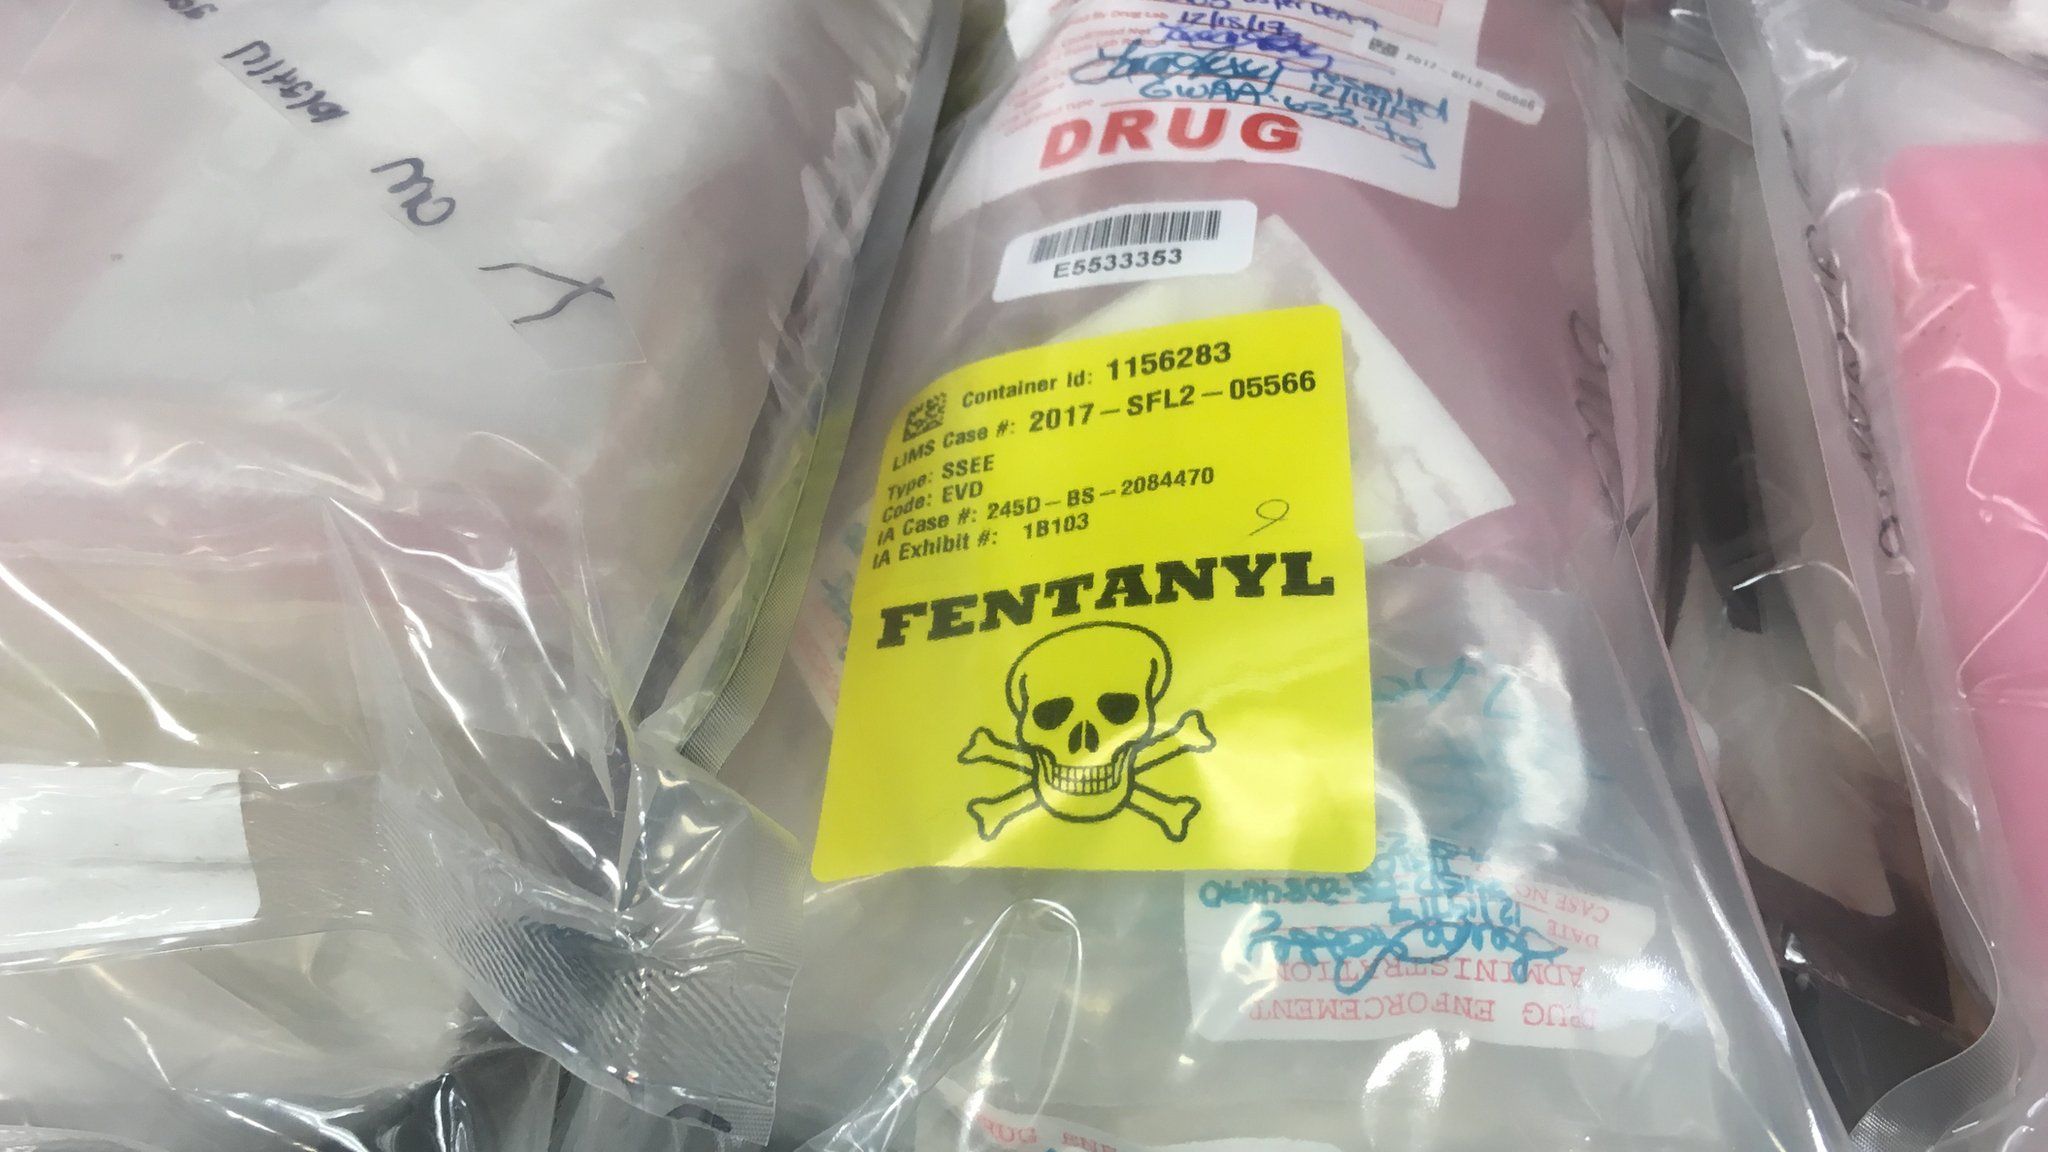 Fentanyl seized